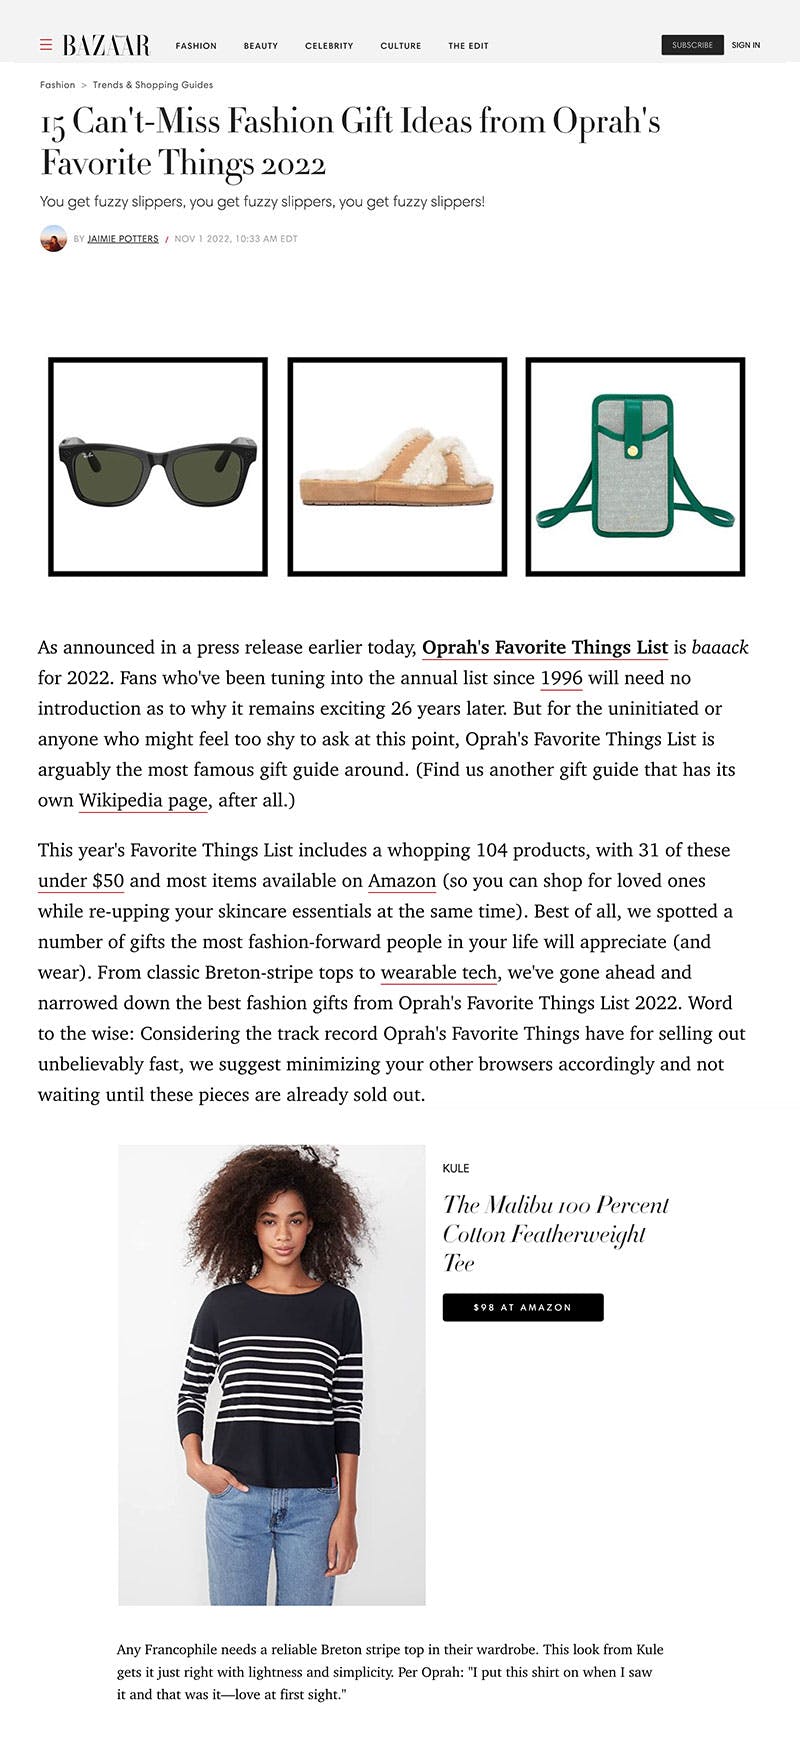 Harper's Bazaar featuring KULE Malibu tee from Oprah's Favorite Things gift guide